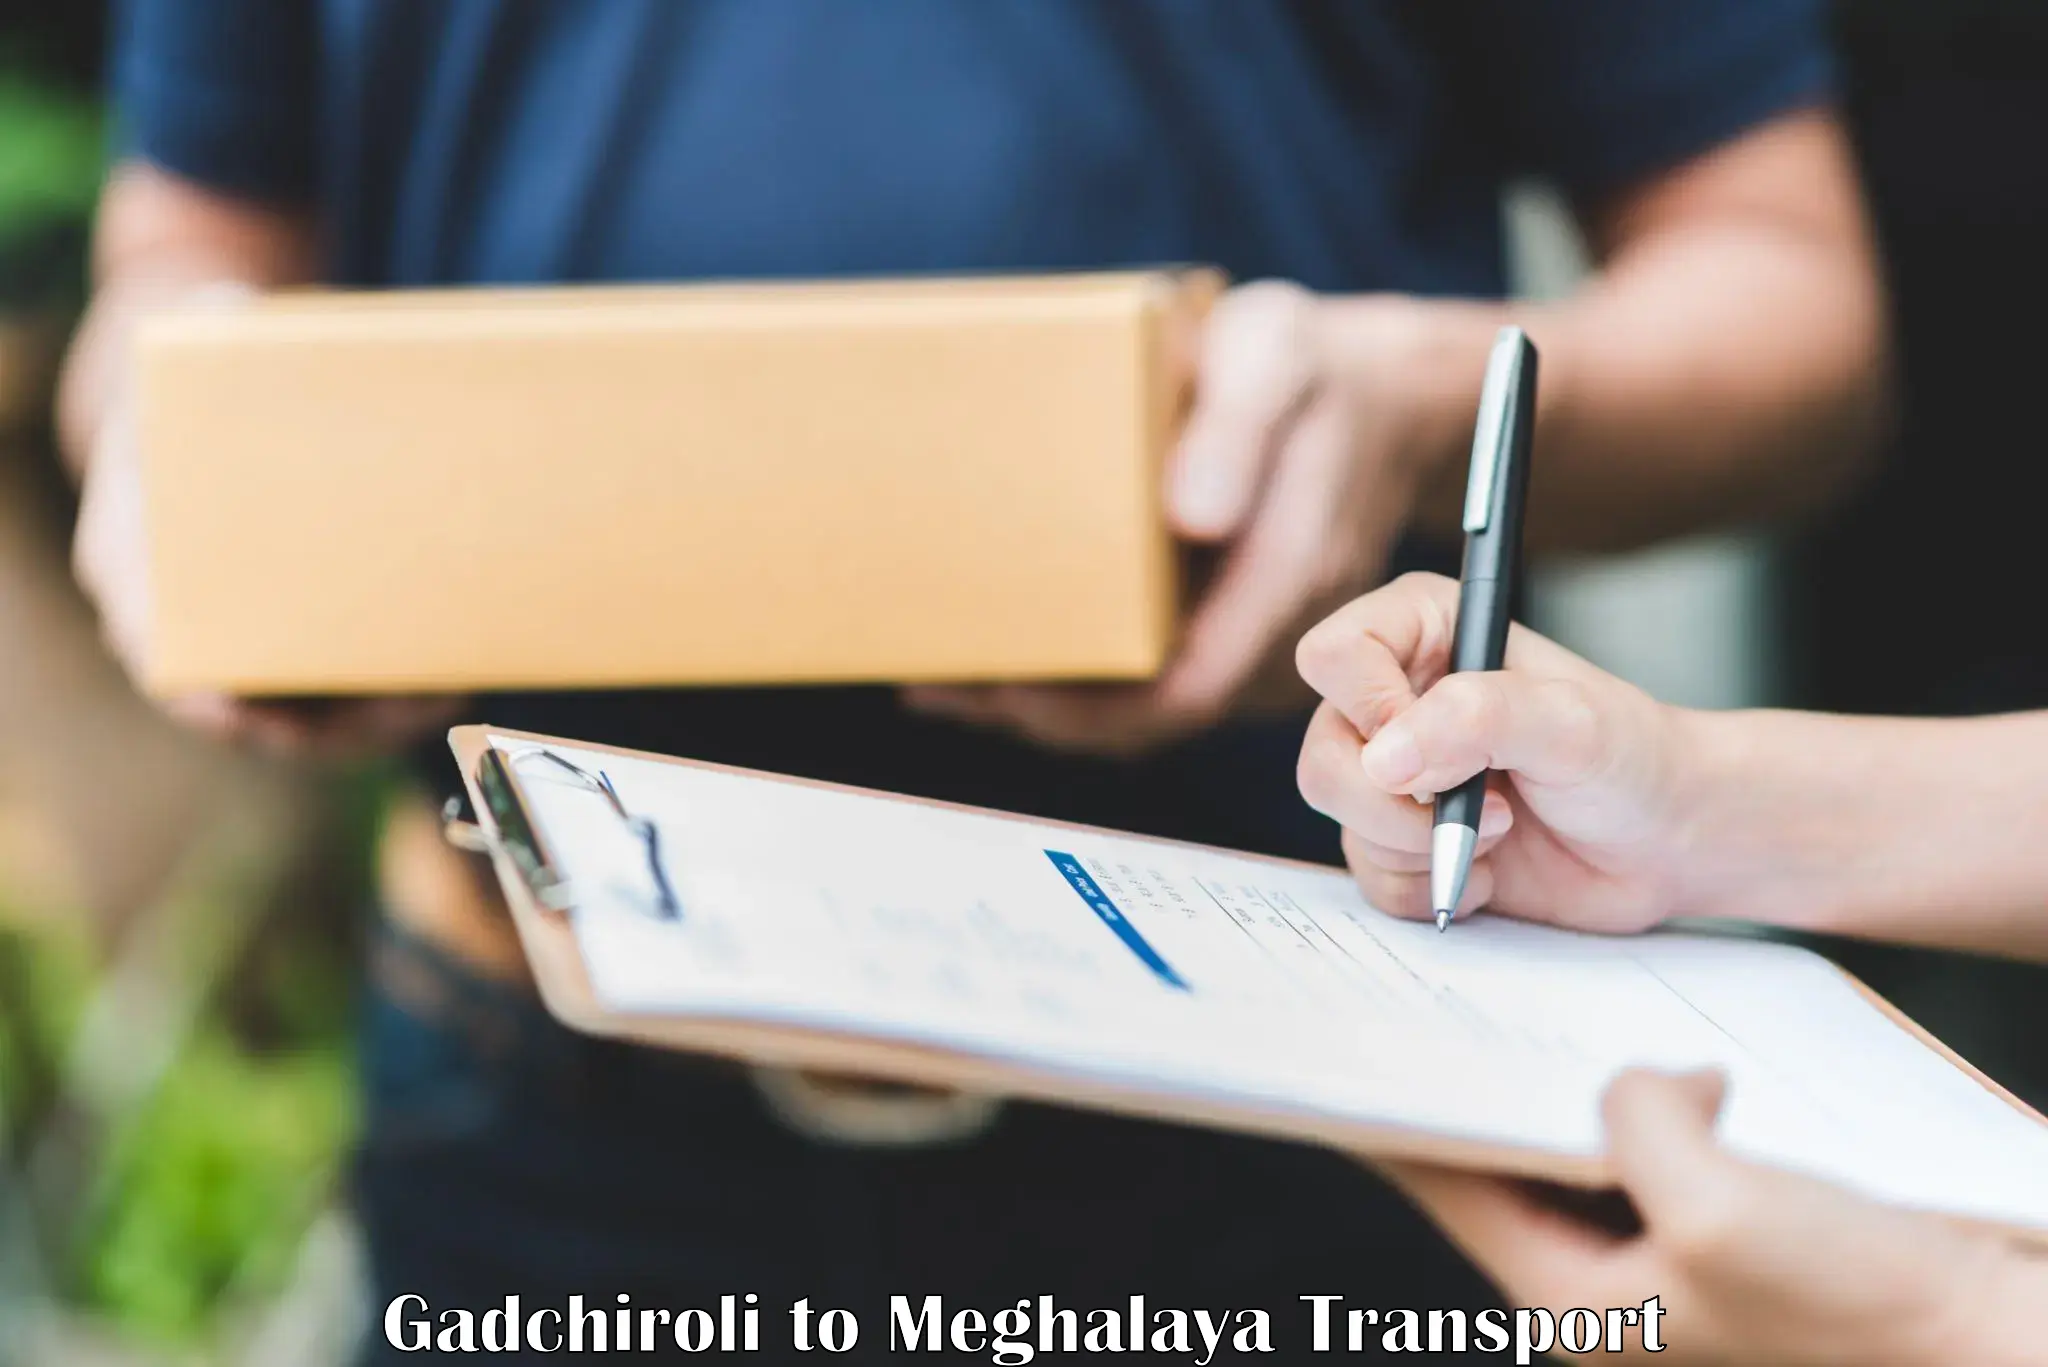 Cycle transportation service Gadchiroli to NIT Meghalaya